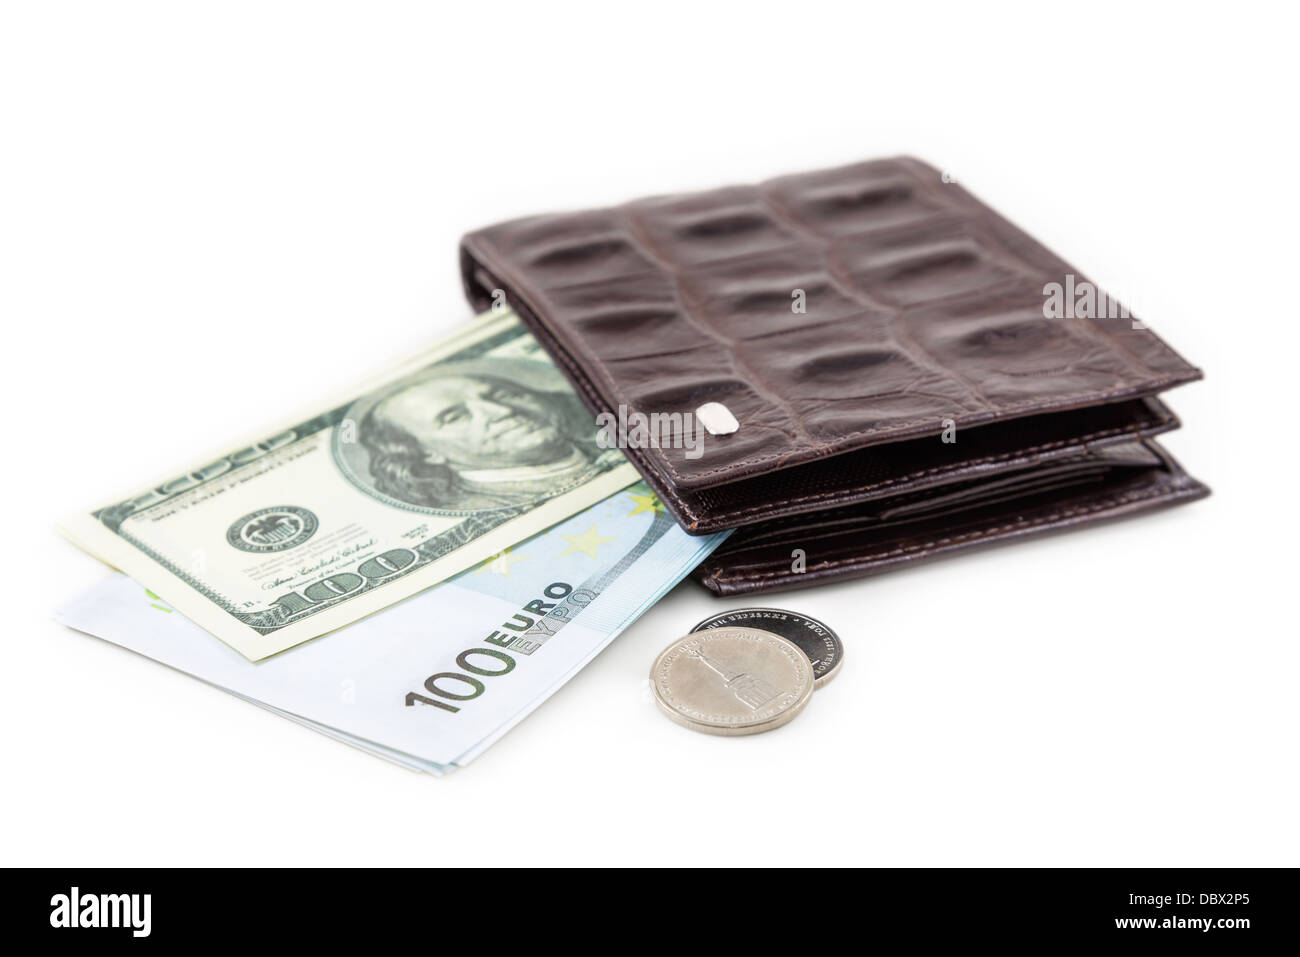 La billetera de cuero marrón con el dólar y el euro es fotografiado en close-up Foto de stock